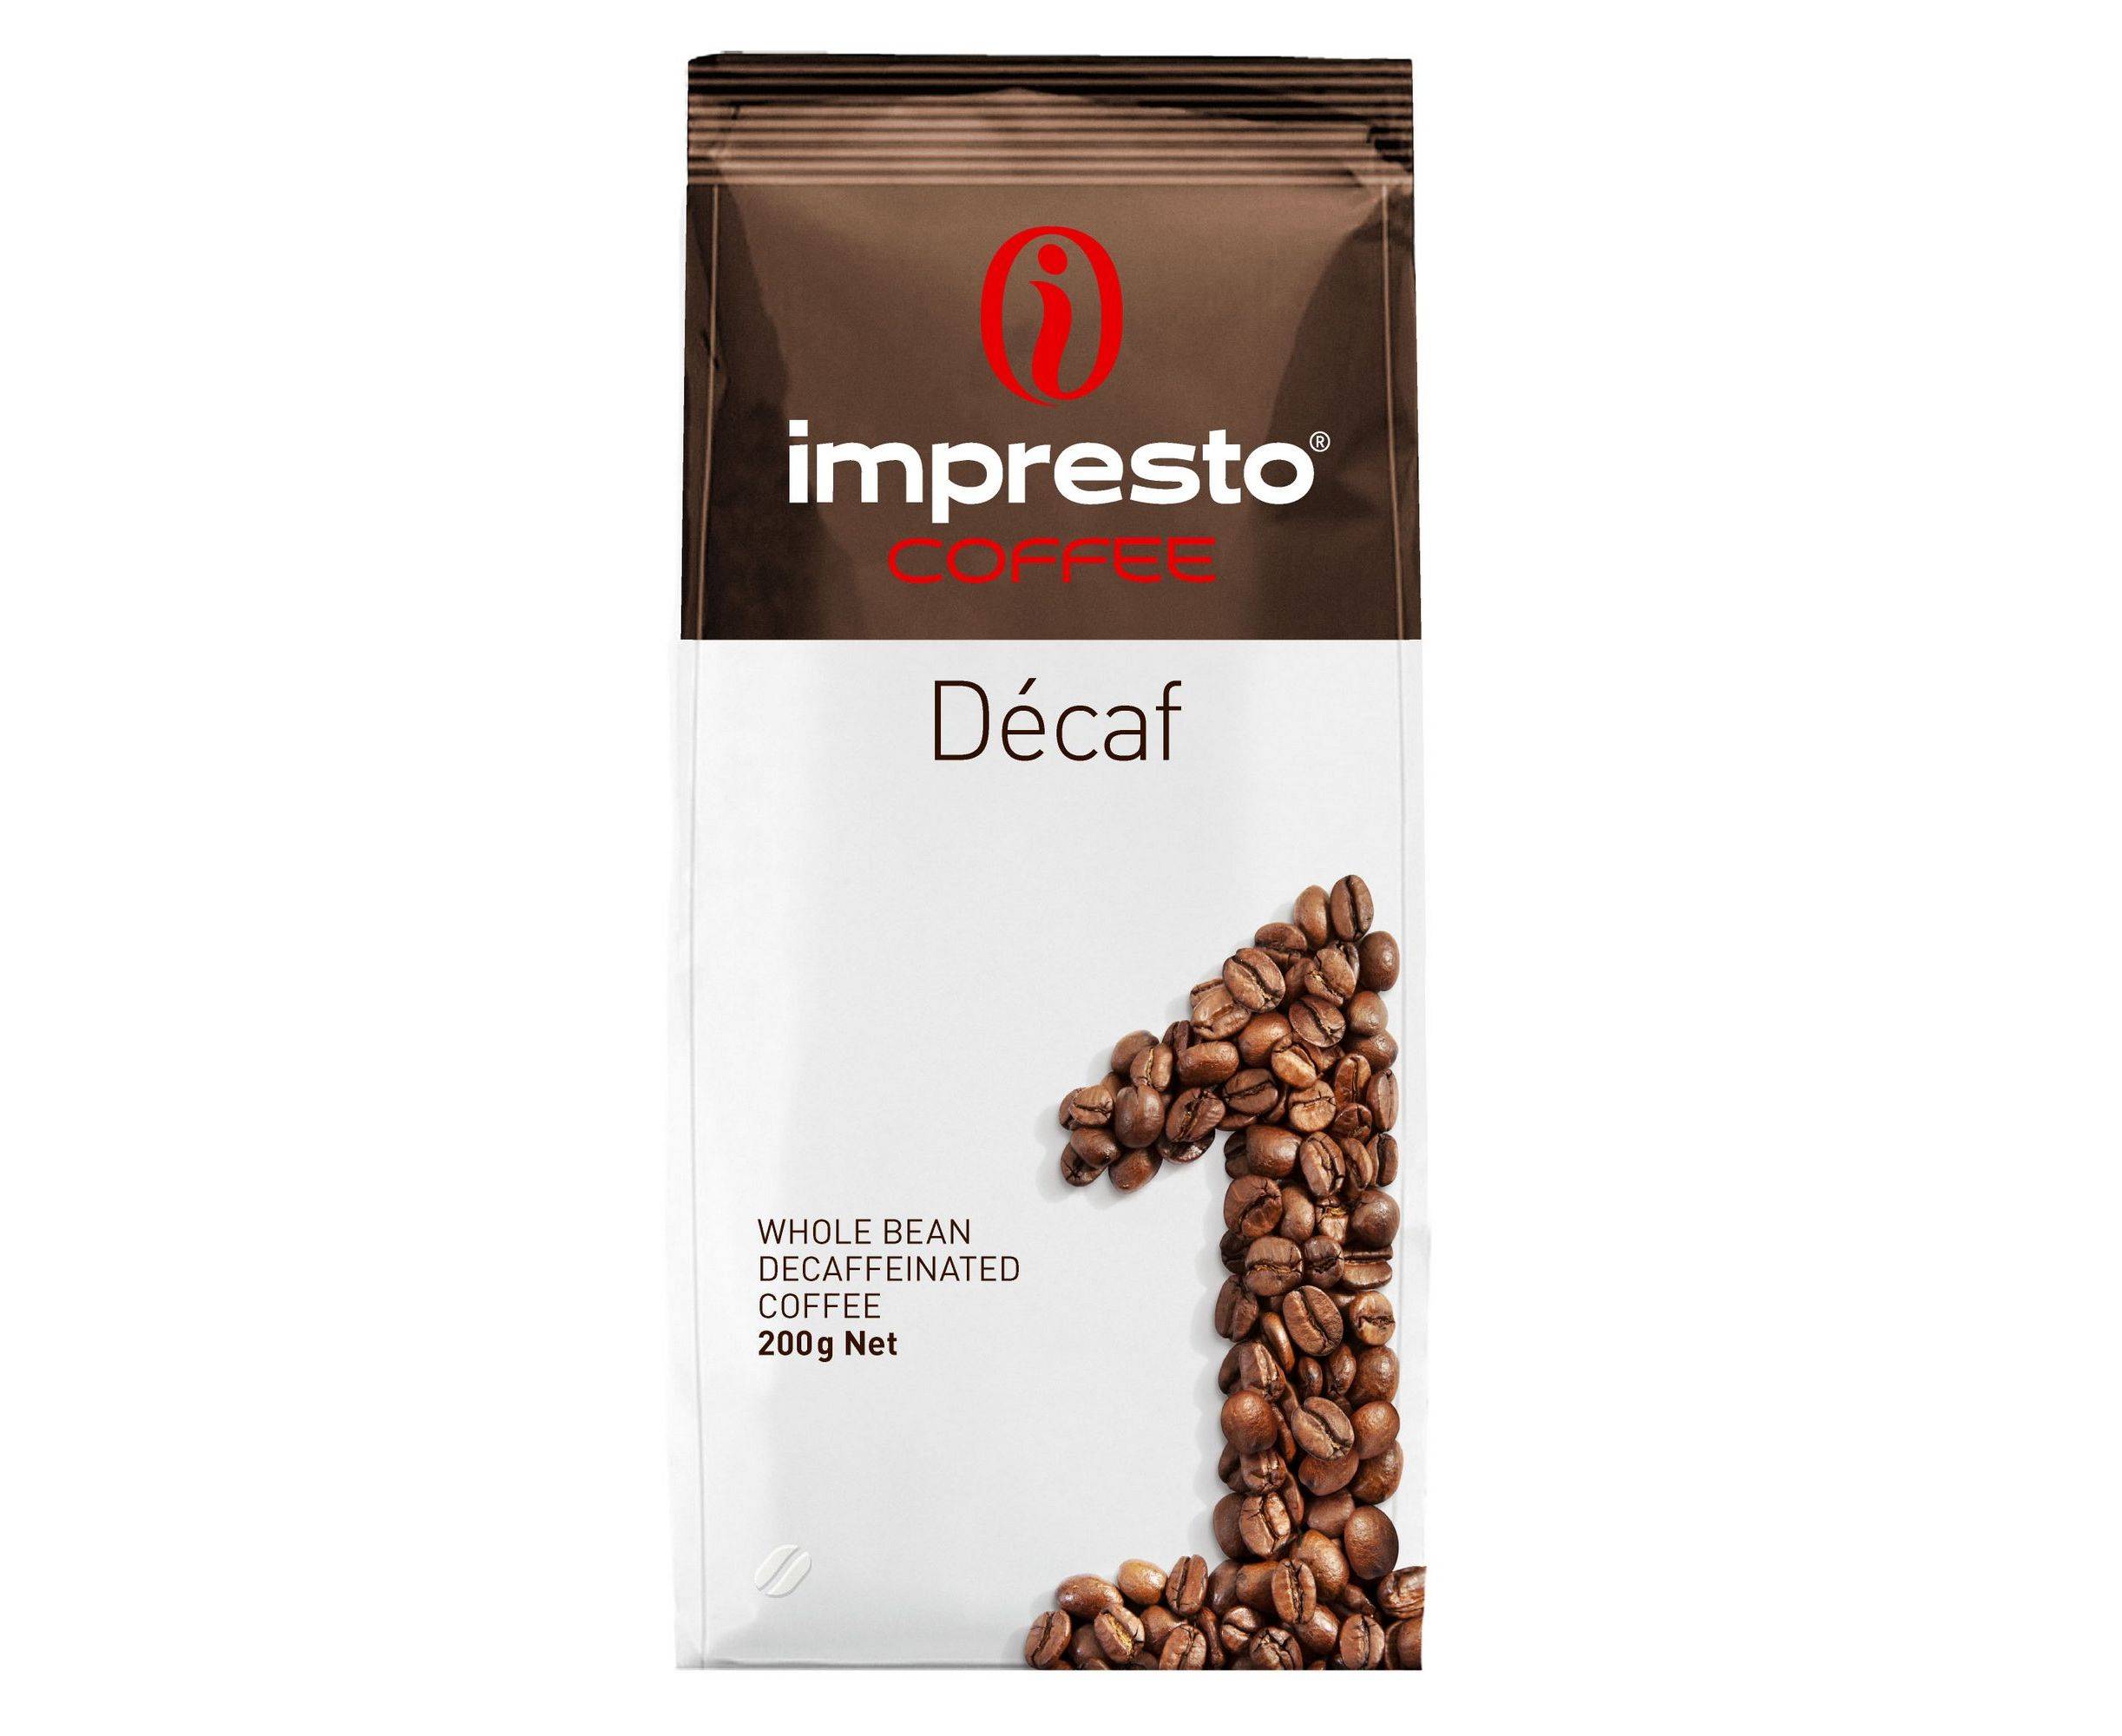 Кофе в зернах impresto roma 1000 гр — цена, купить в москве